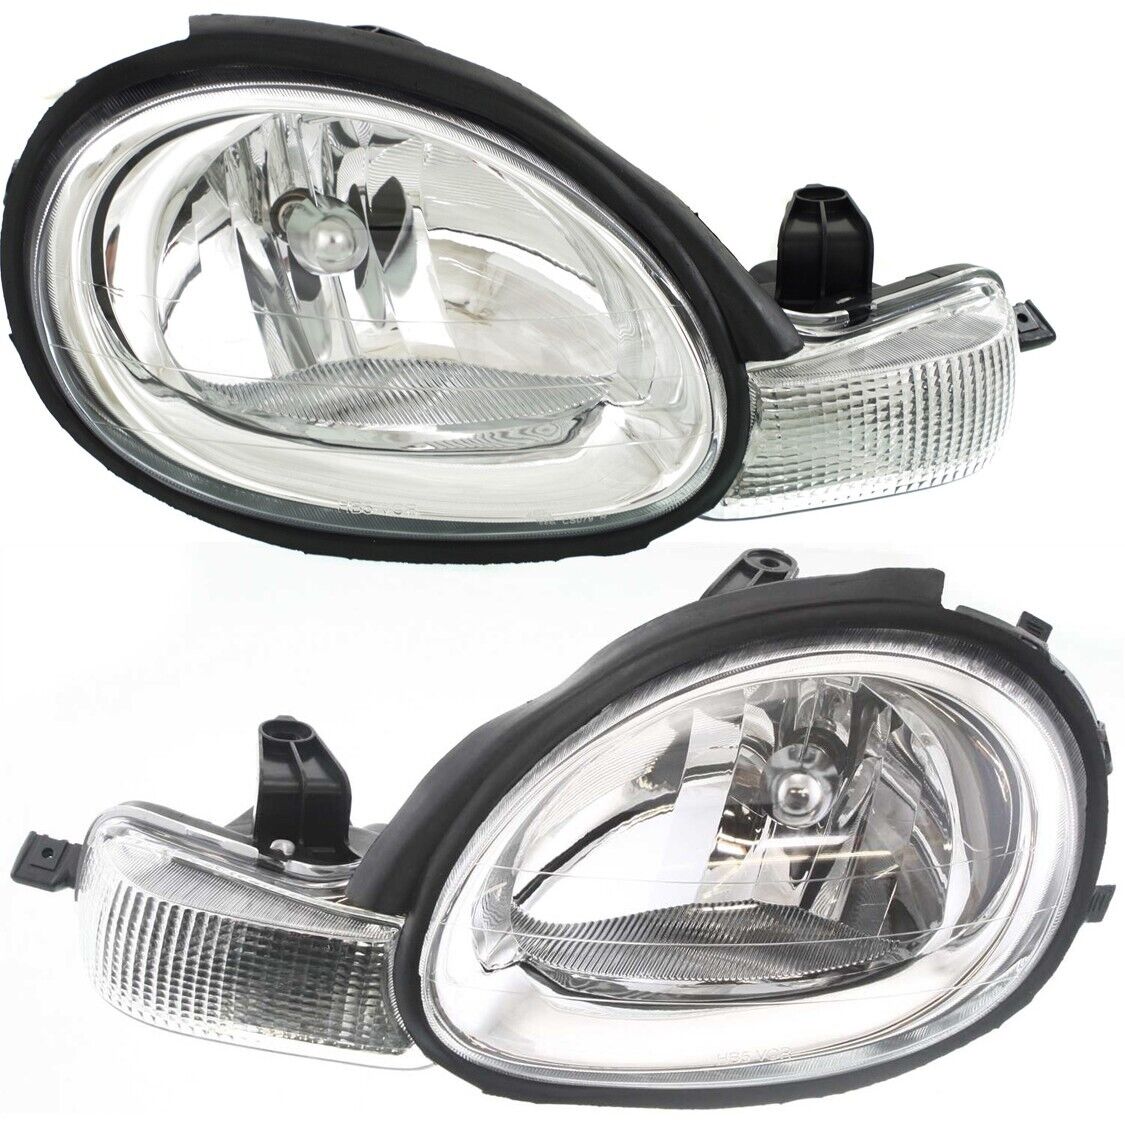 Headlight Set For 2000-02 Dodge Chrysler Neon Left and Right Chrome Interior 2Pc